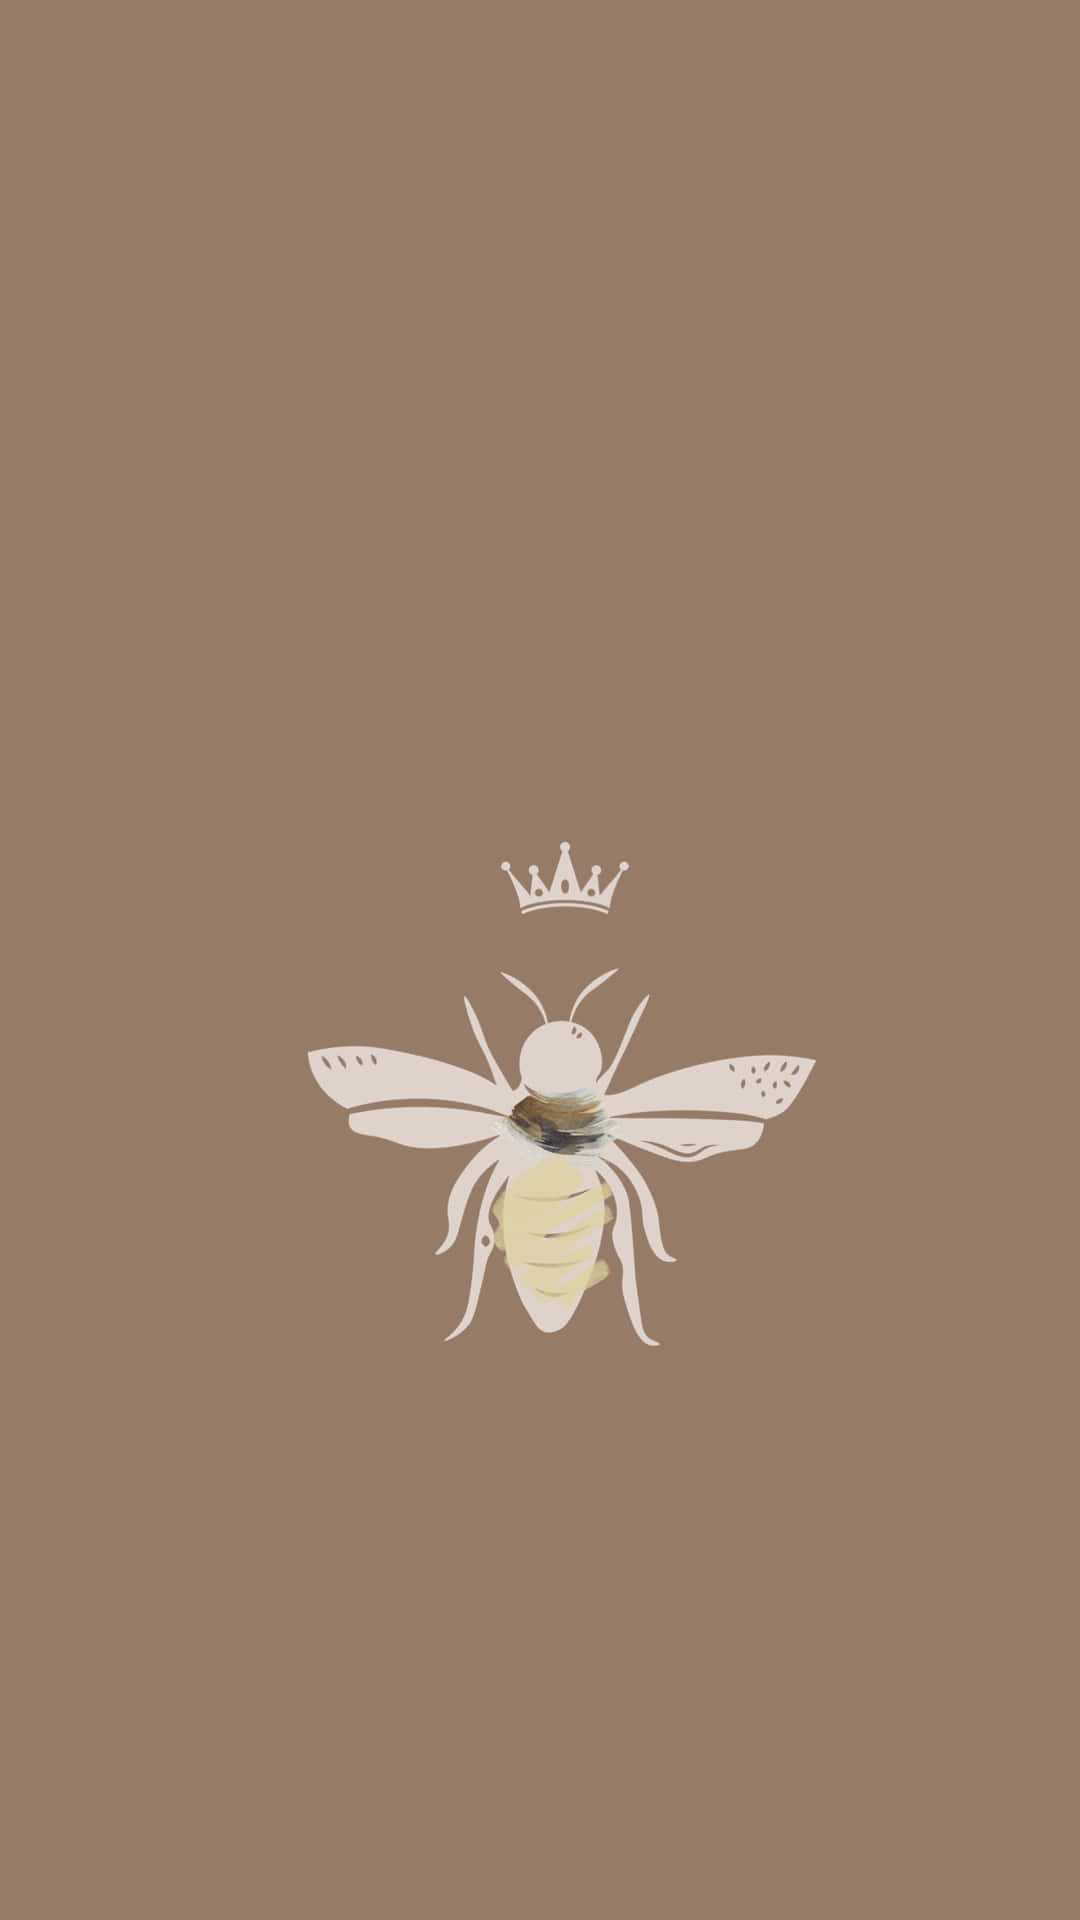 Bienenkronengrafik-kunst Für Das Iphone Wallpaper